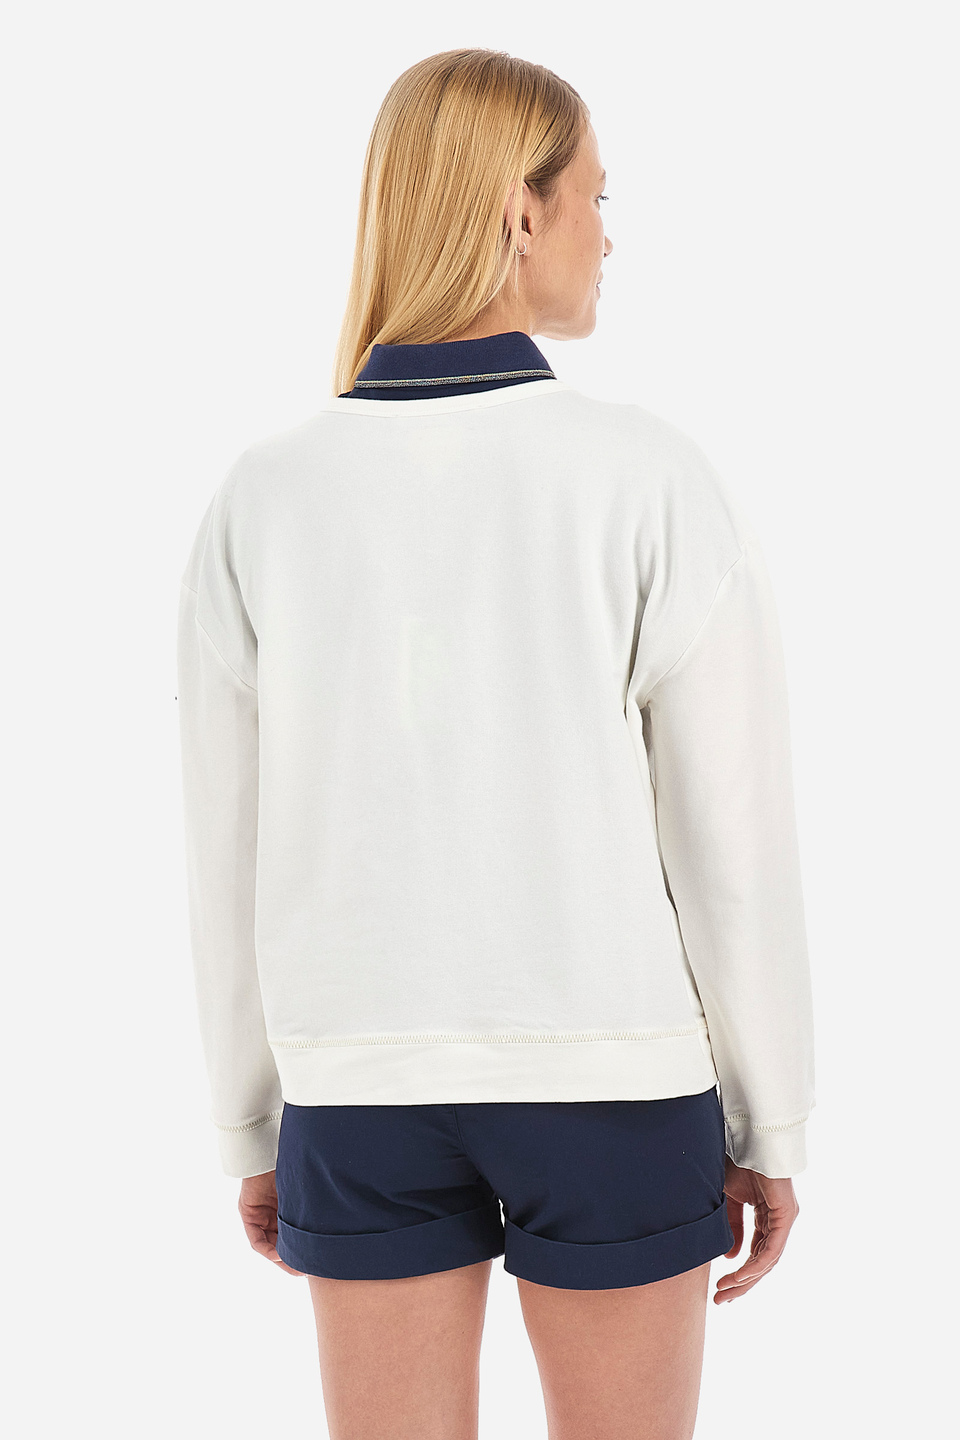 Damen-SweaT-shirt aus Baumwollmischung mit normaler Passform- Venita | La Martina - Official Online Shop